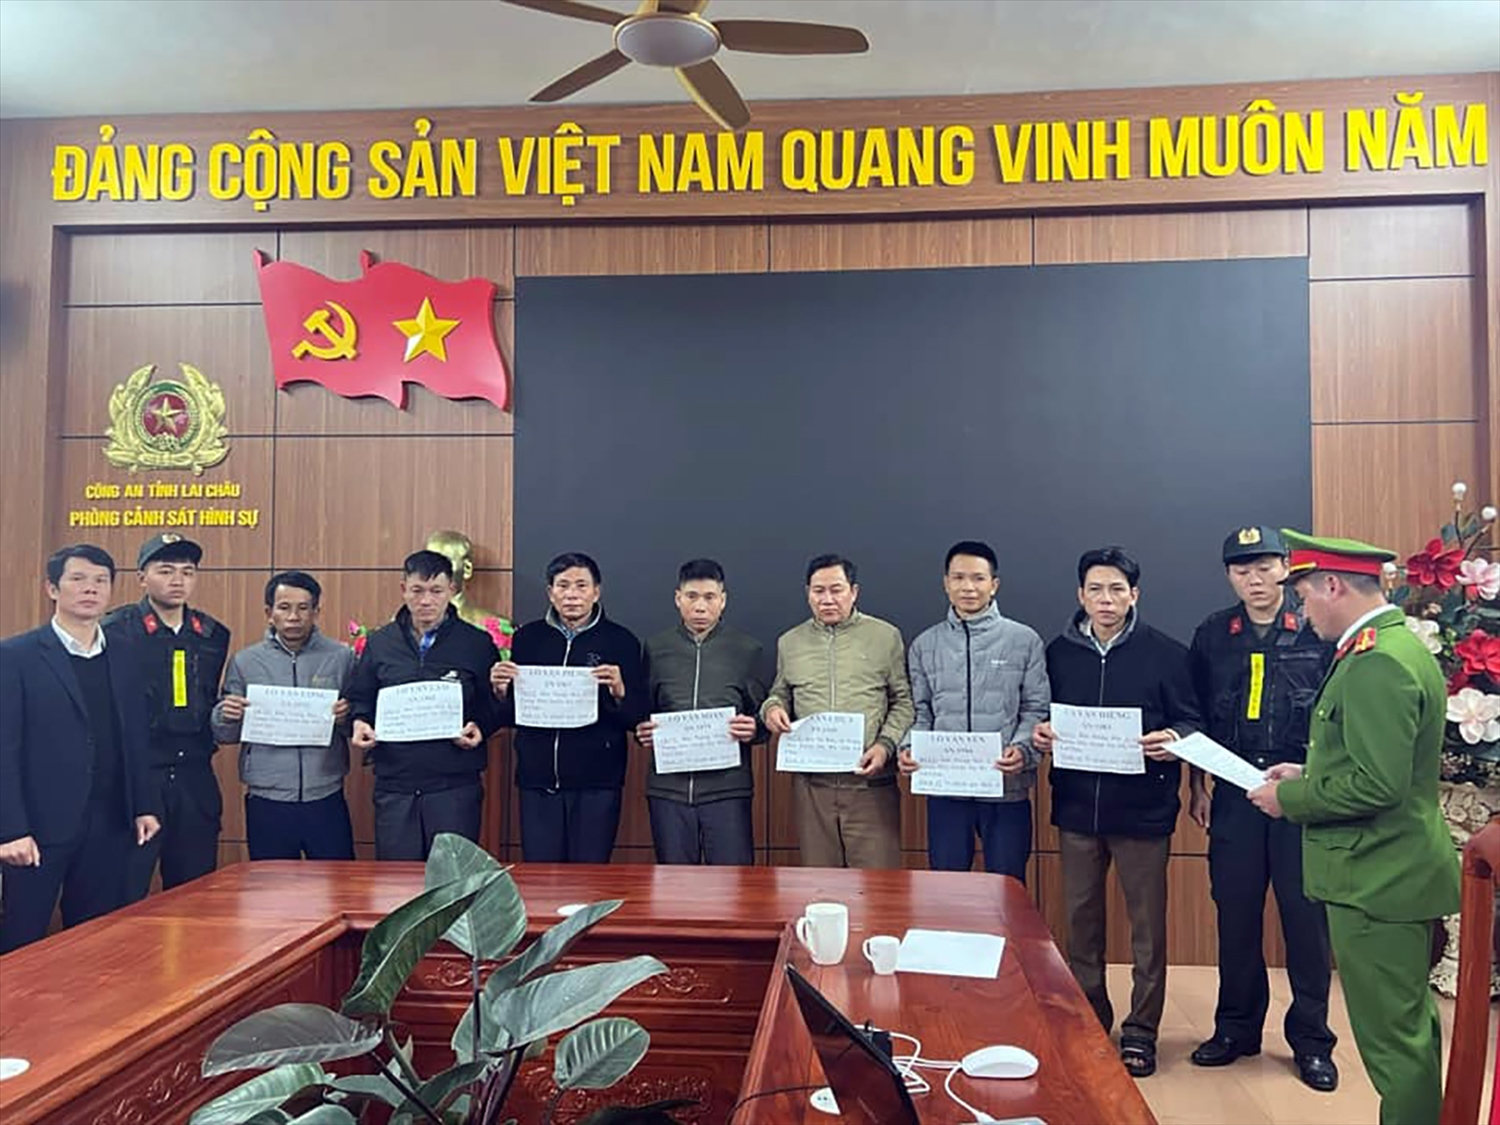 Cảnh sát điều tra - Công an tỉnh Lai Châu thực hiện lệnh bắt khẩn cấp tạm giữ hình sự 7 đối tượng về hành vi, vi phạm quy định về nghiên cứu, thăm dò, khai thác tài nguyên.